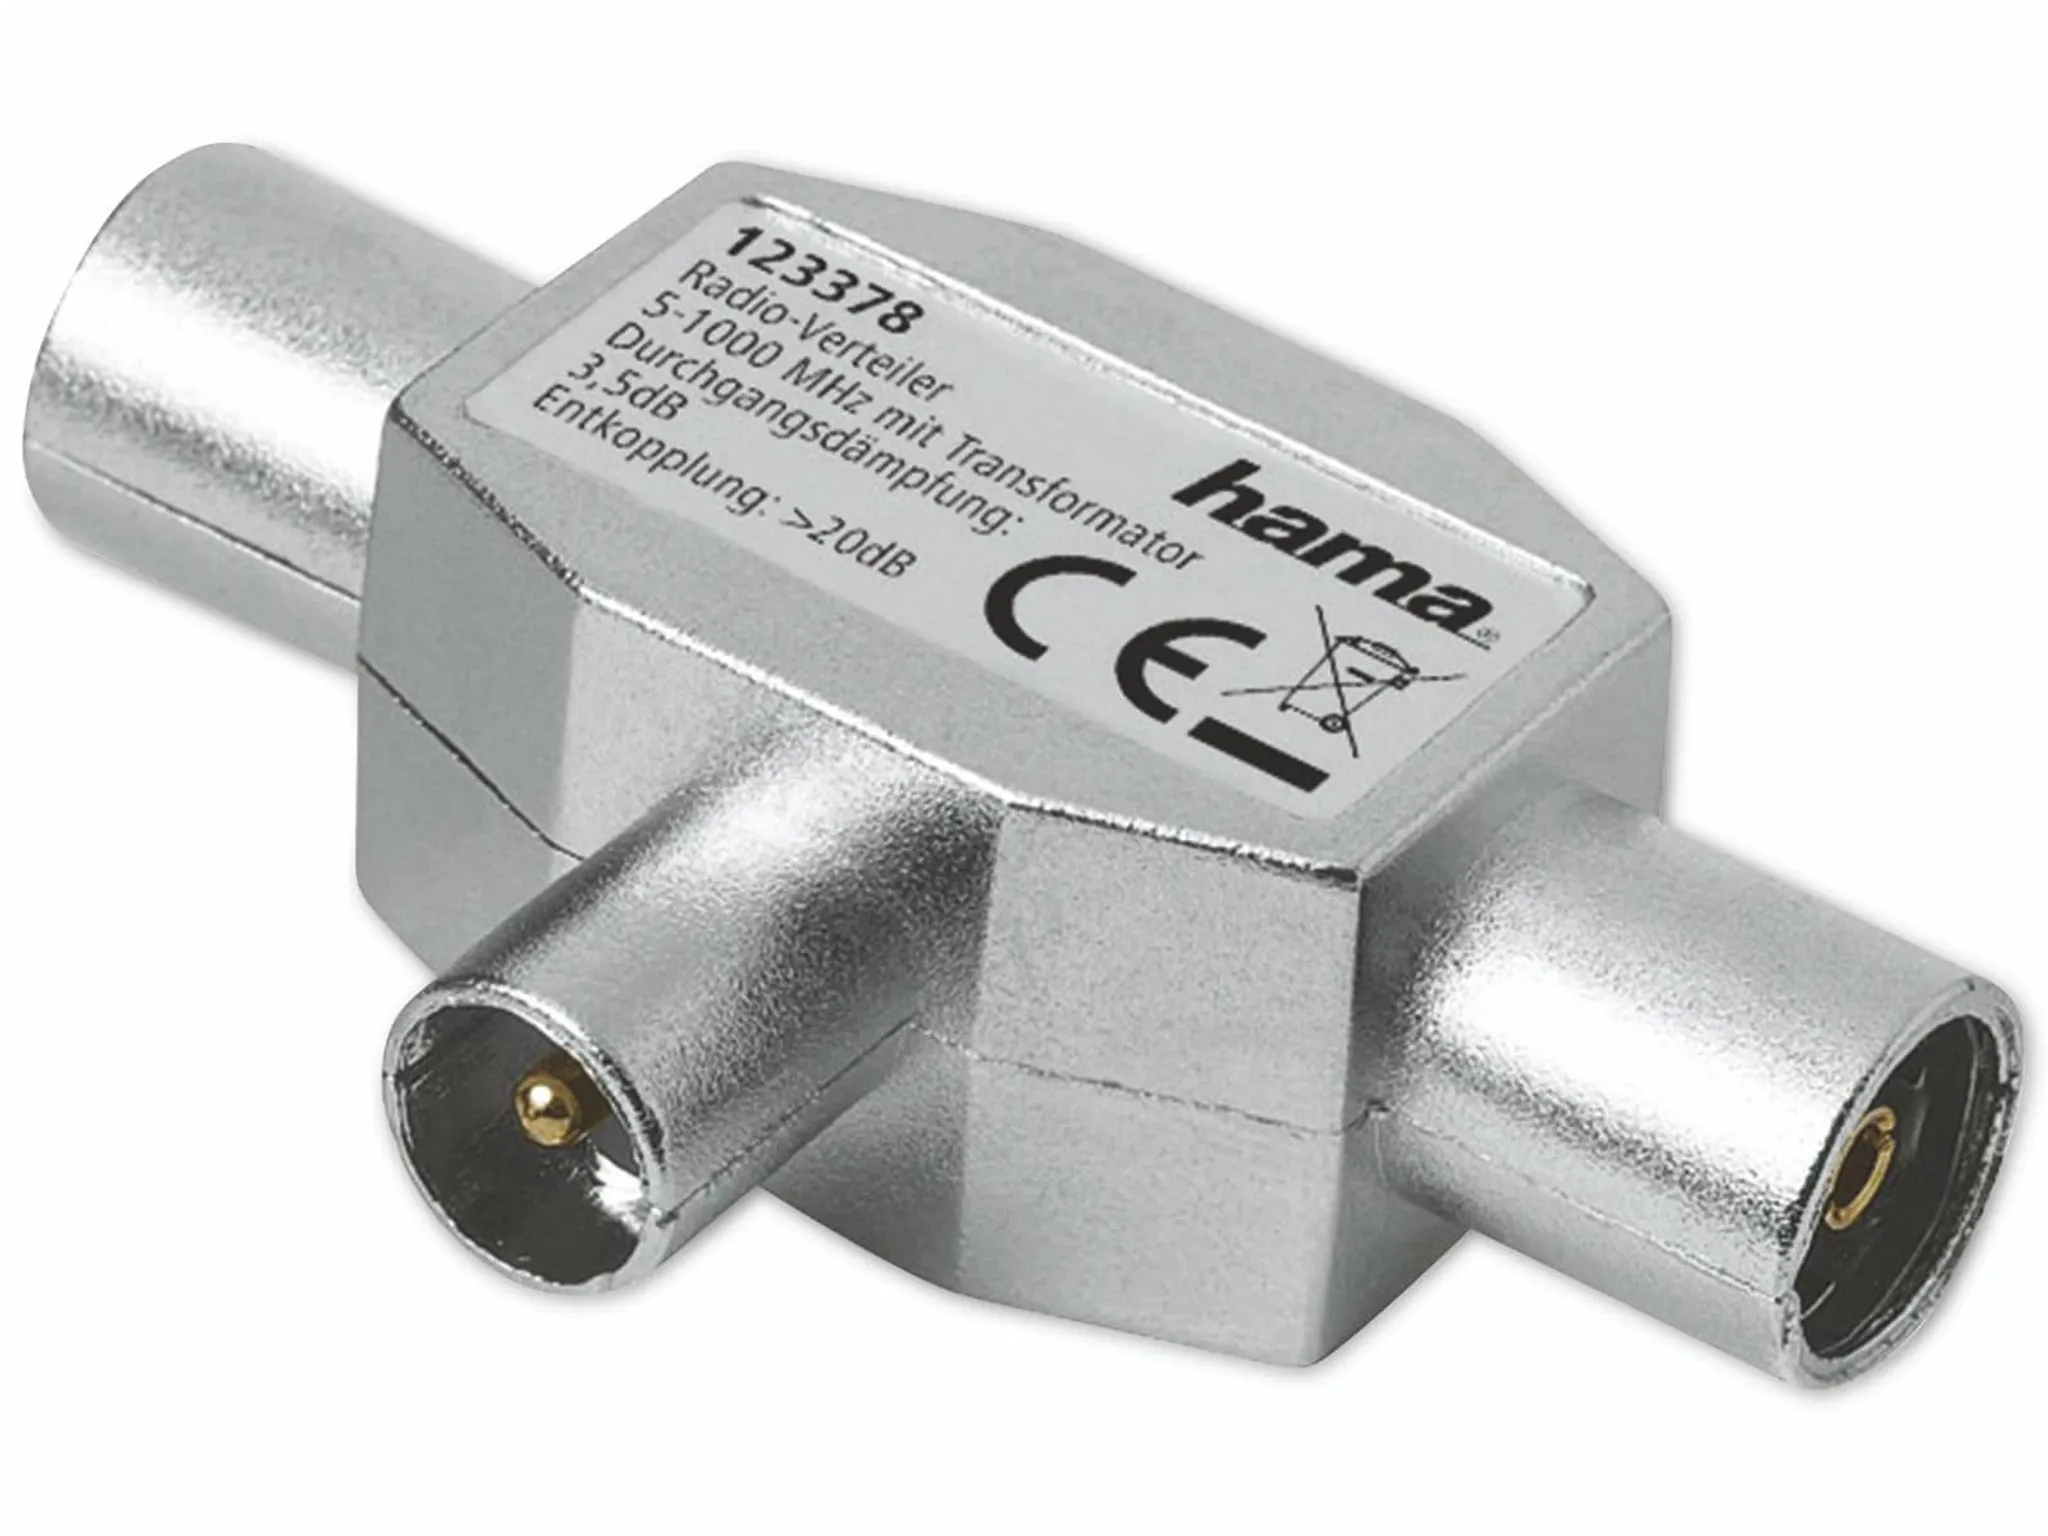 Hama Antennen-Adapter-Set F-Stecker 5,5 mm Schraubbar Silber 2